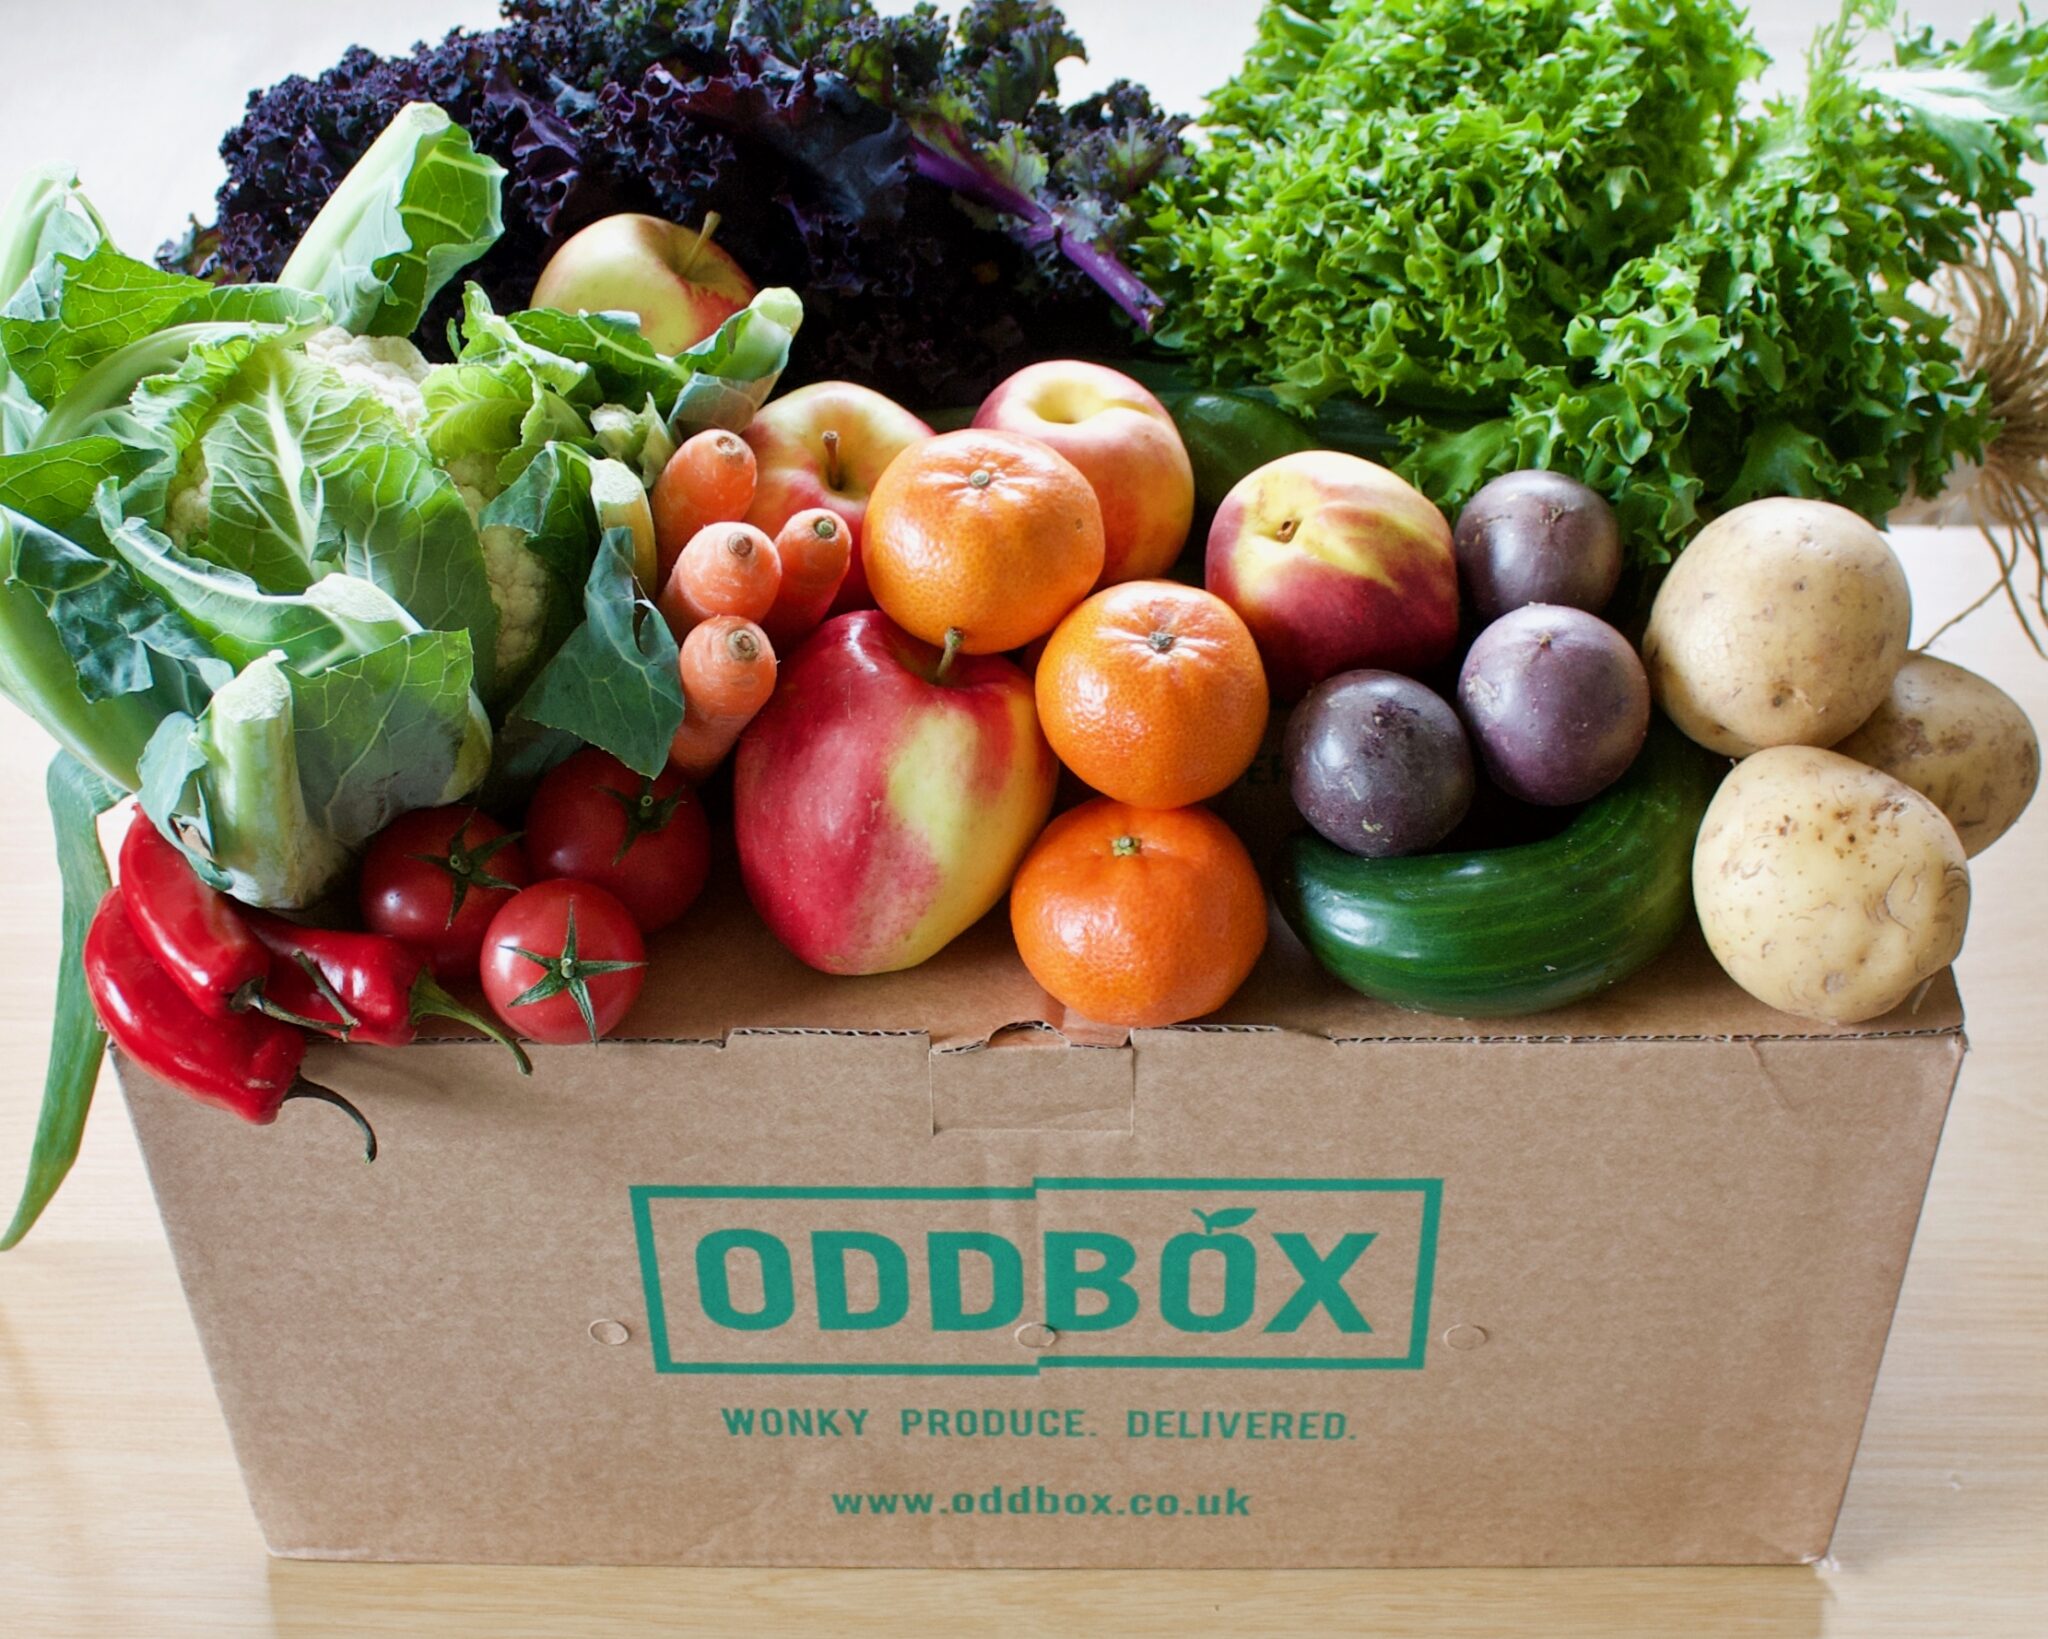 misshapen vegetable boxes